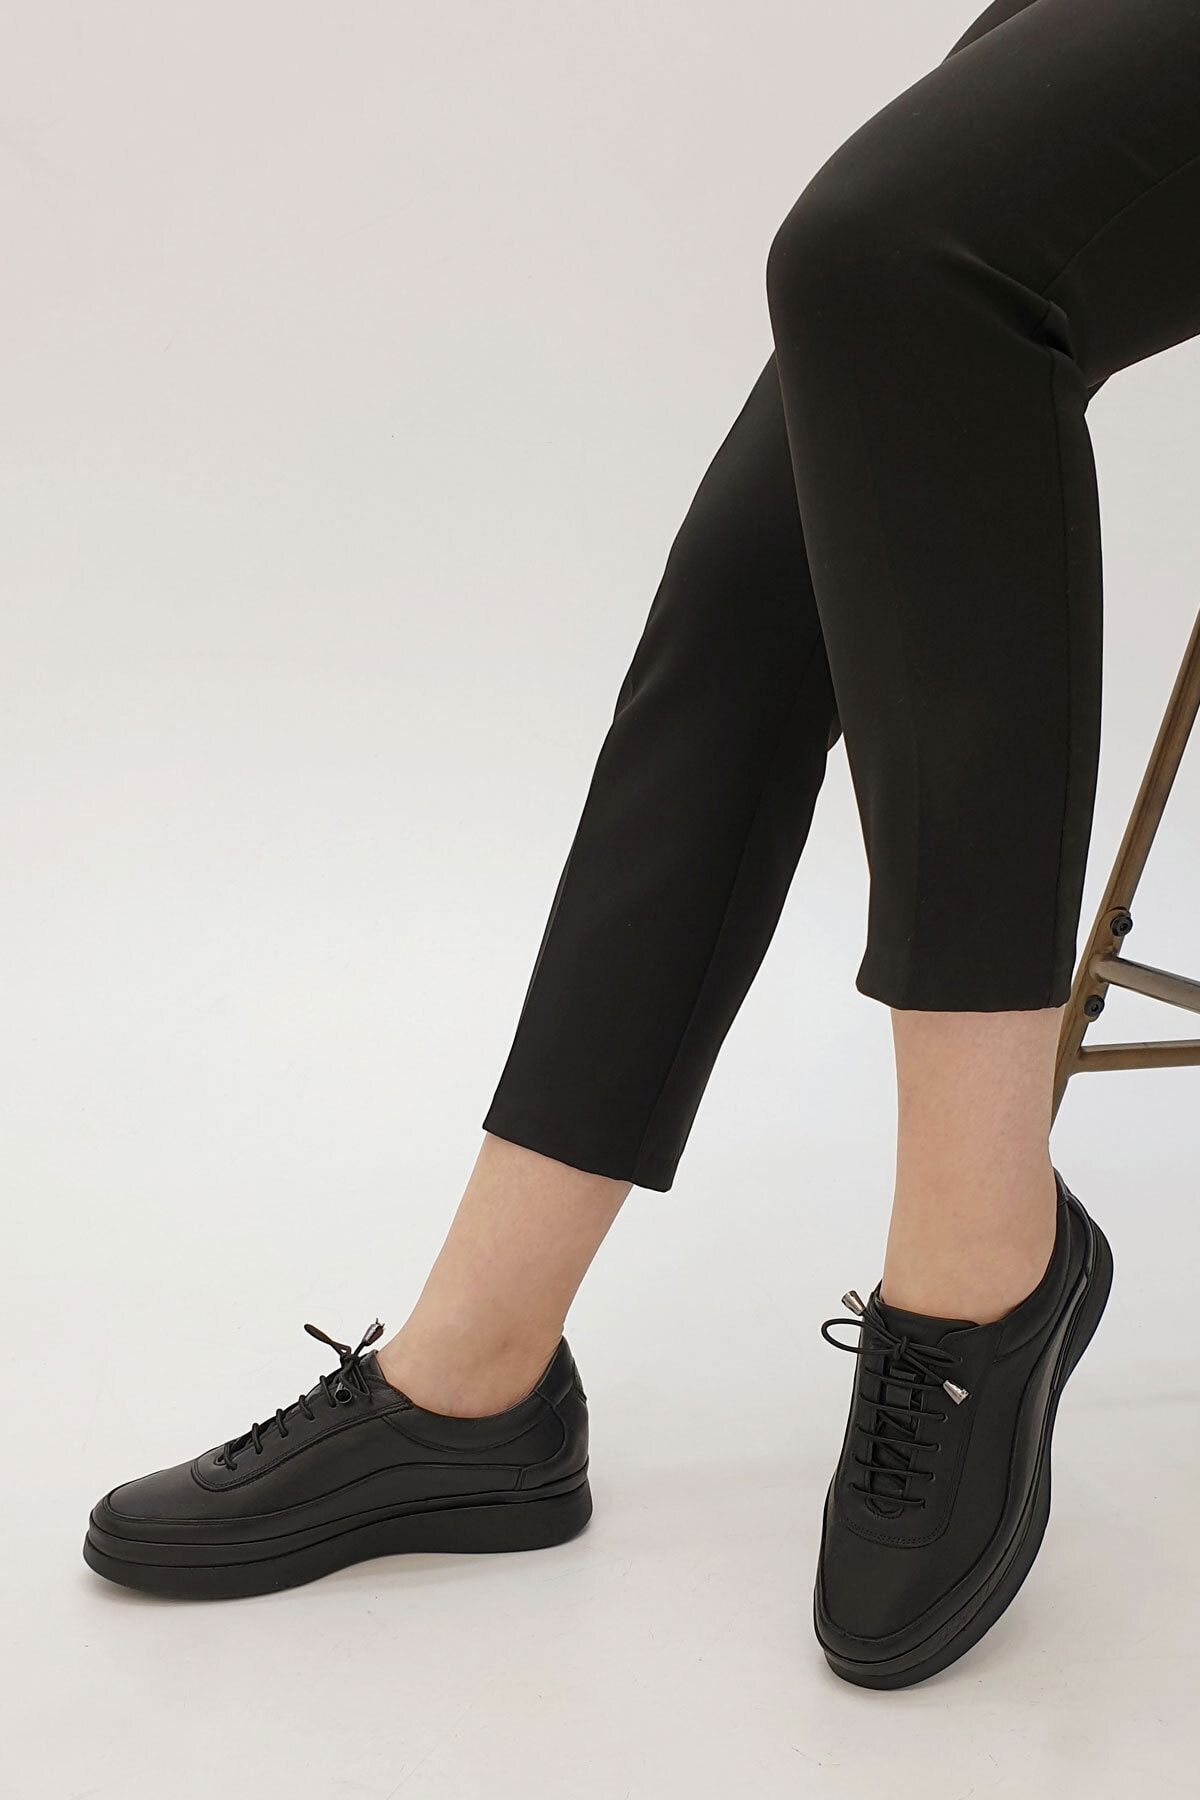 Marjin Kadın Hakiki Deri Comfort Ayakkabı Sensiva siyah